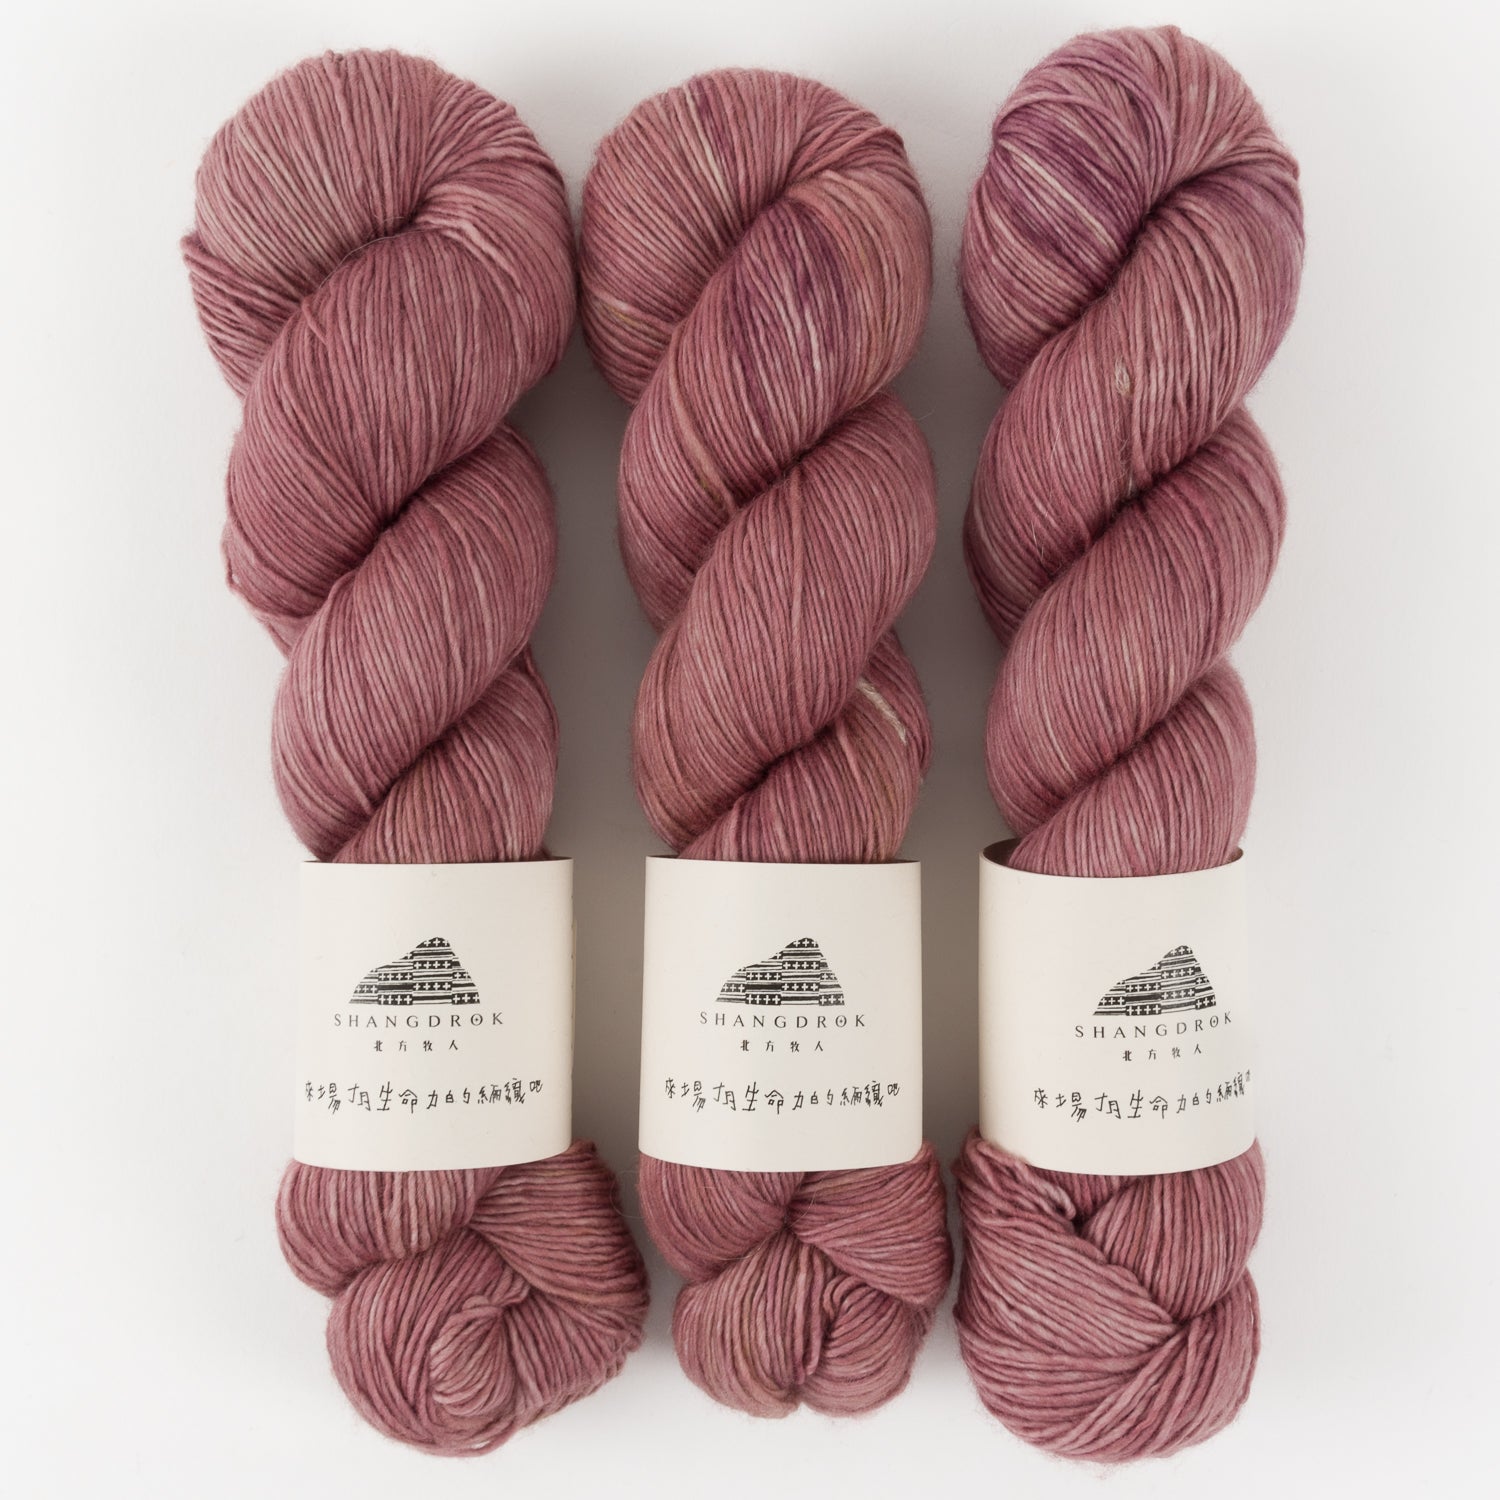 Knitting for Olive Merino - SOFT ROSE